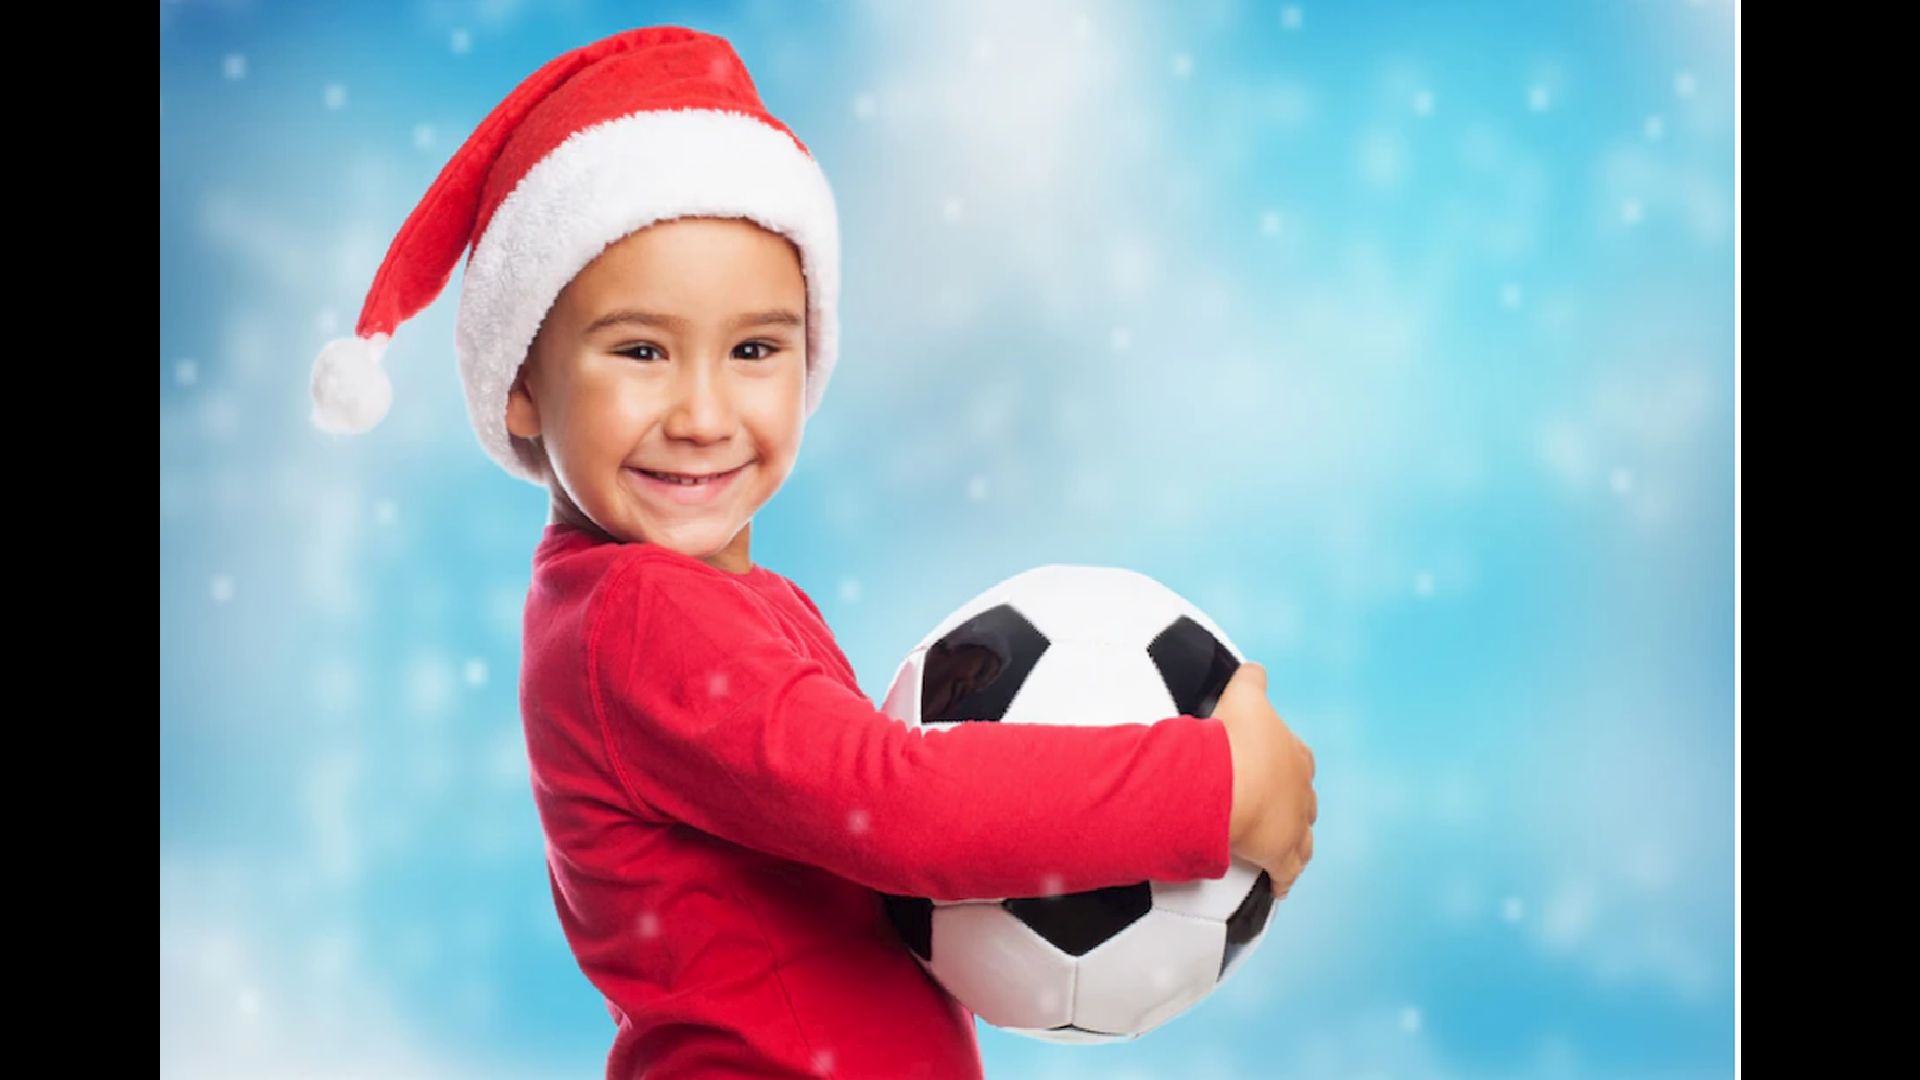 Los deportes y el arte son buenas maneras de incentivar a los niños en esta Navidad (Freepik)